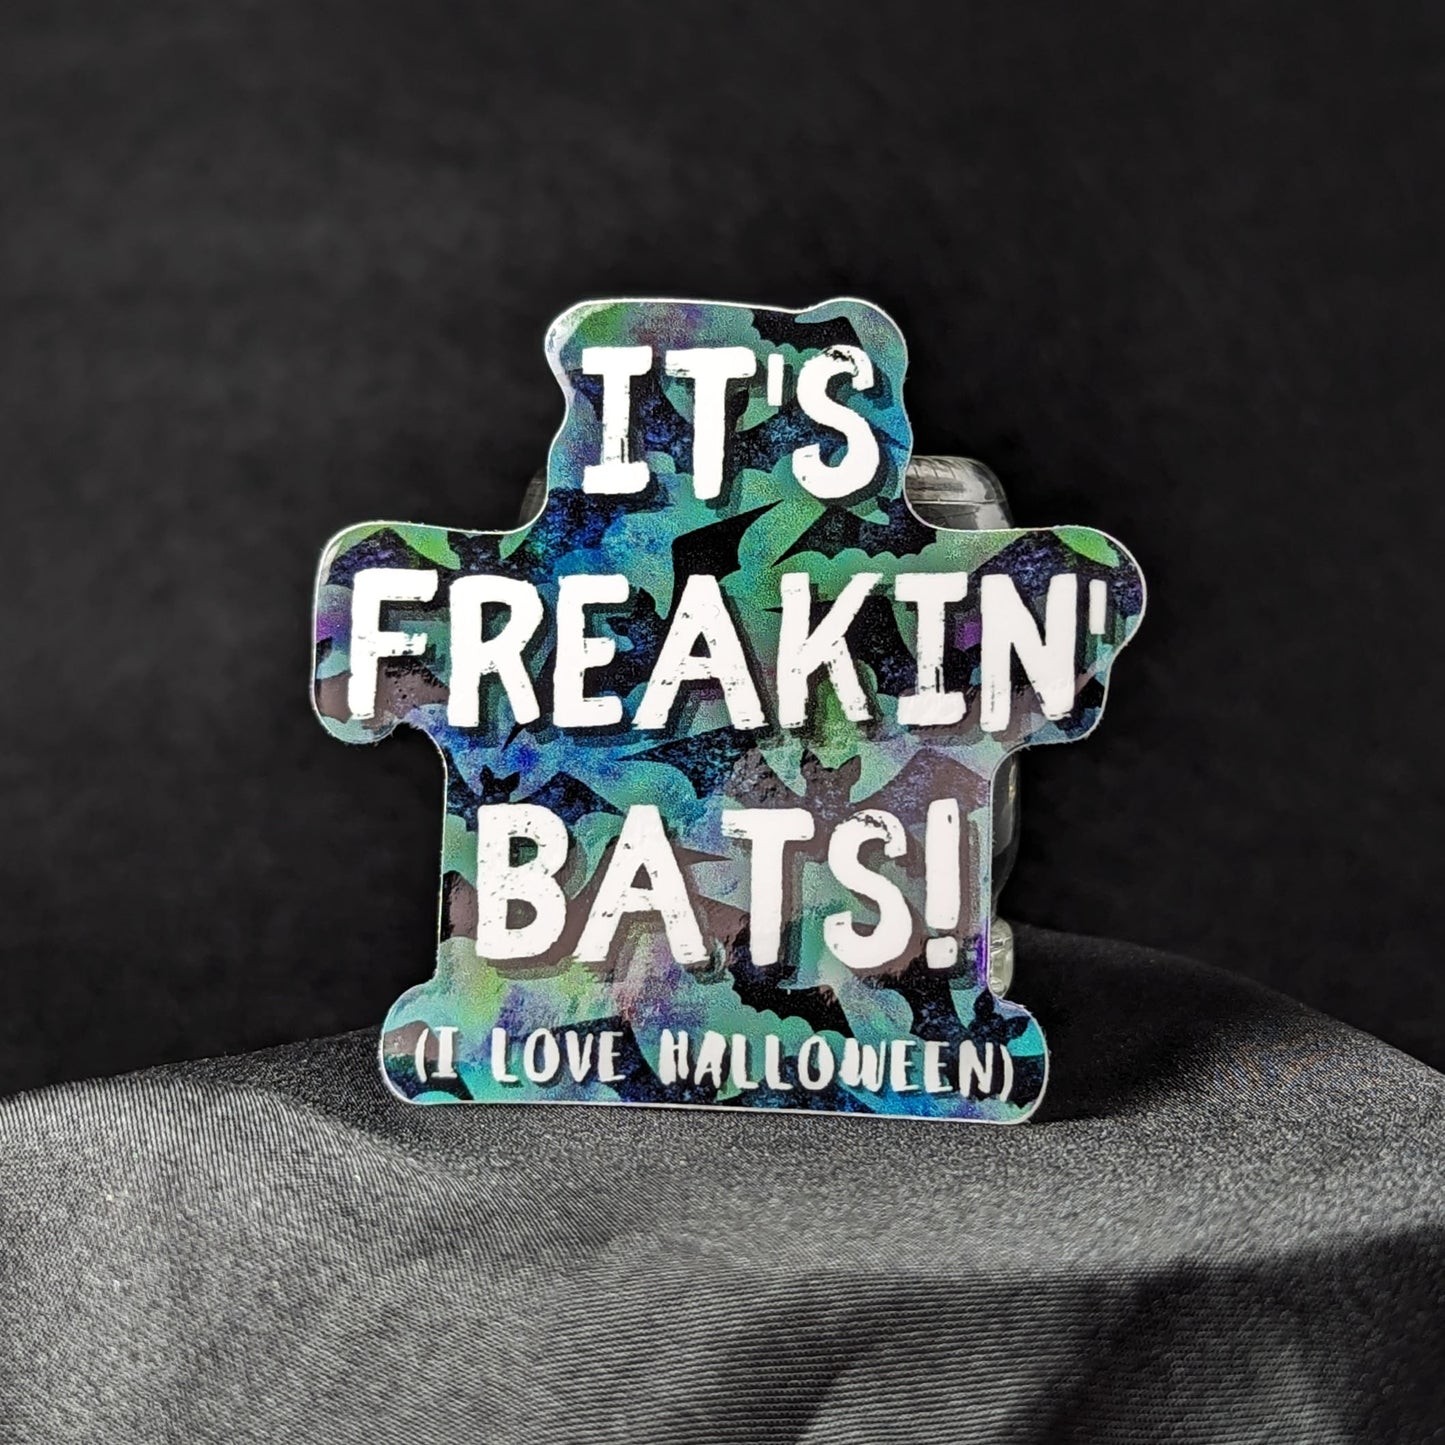 It's Freakin' Bats! - Vinyl Halloween Sticker